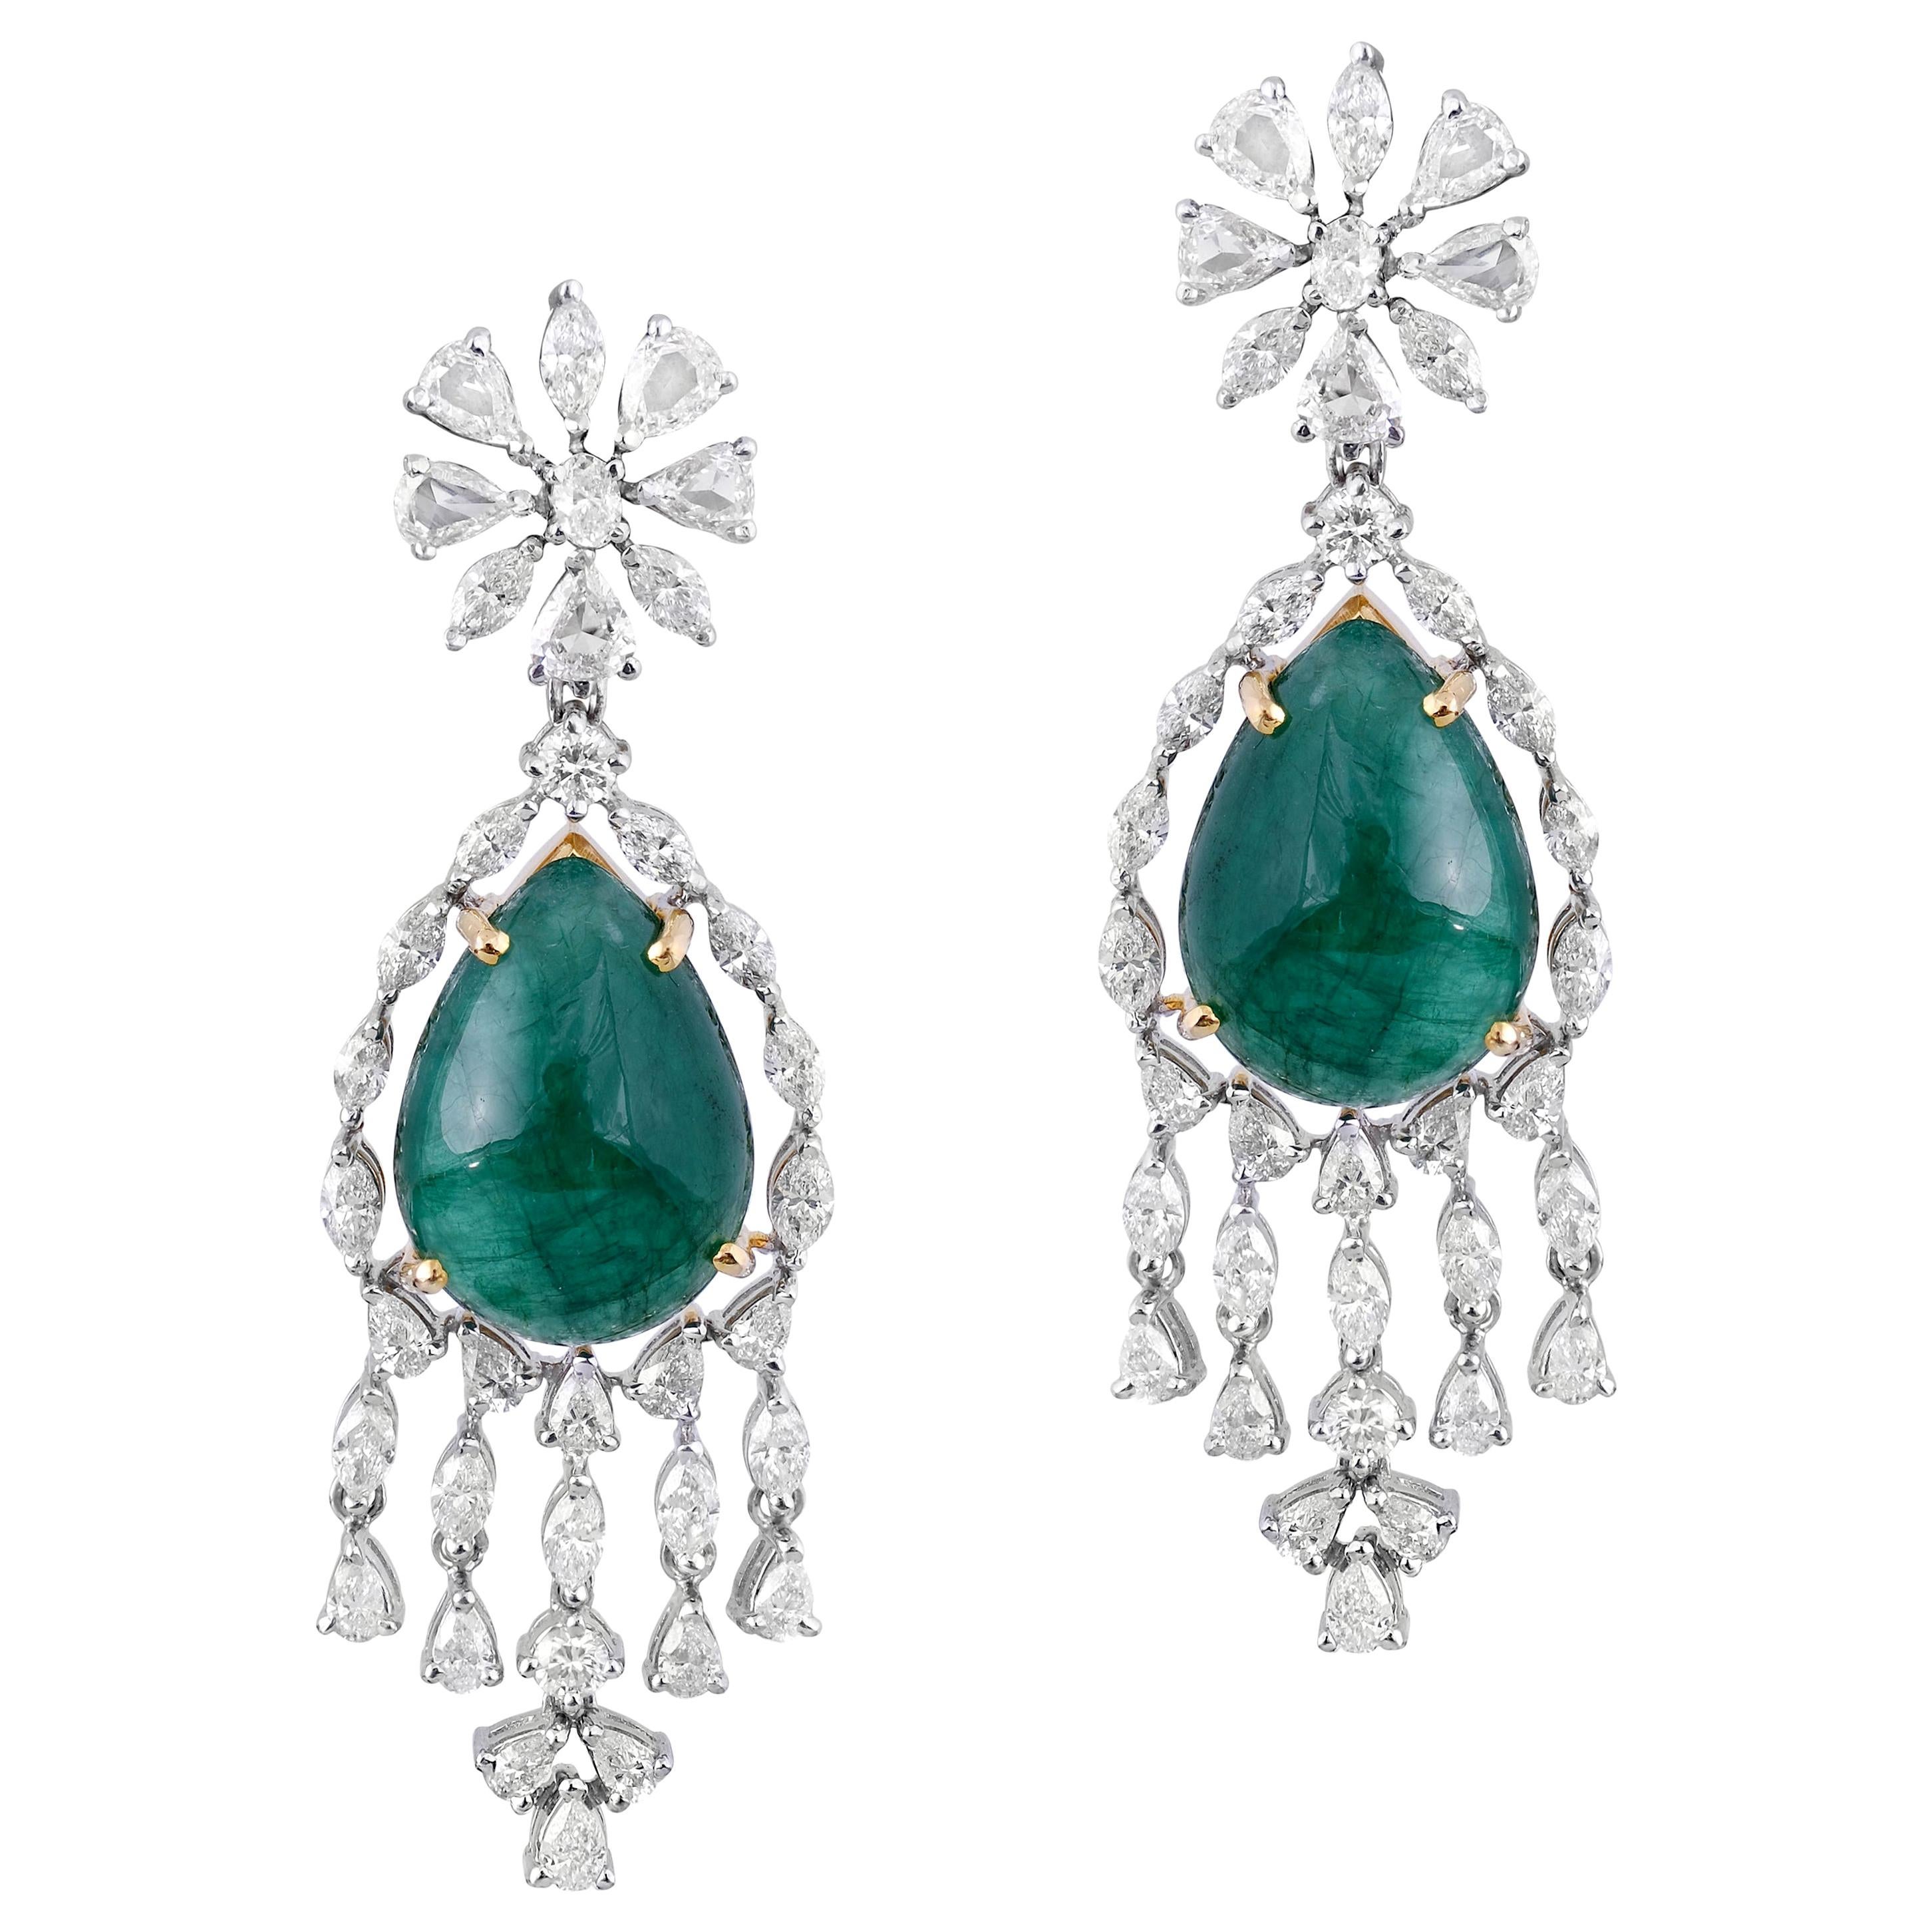  Cabochon Emerald Diamond Rose Cut Diamond Earrings